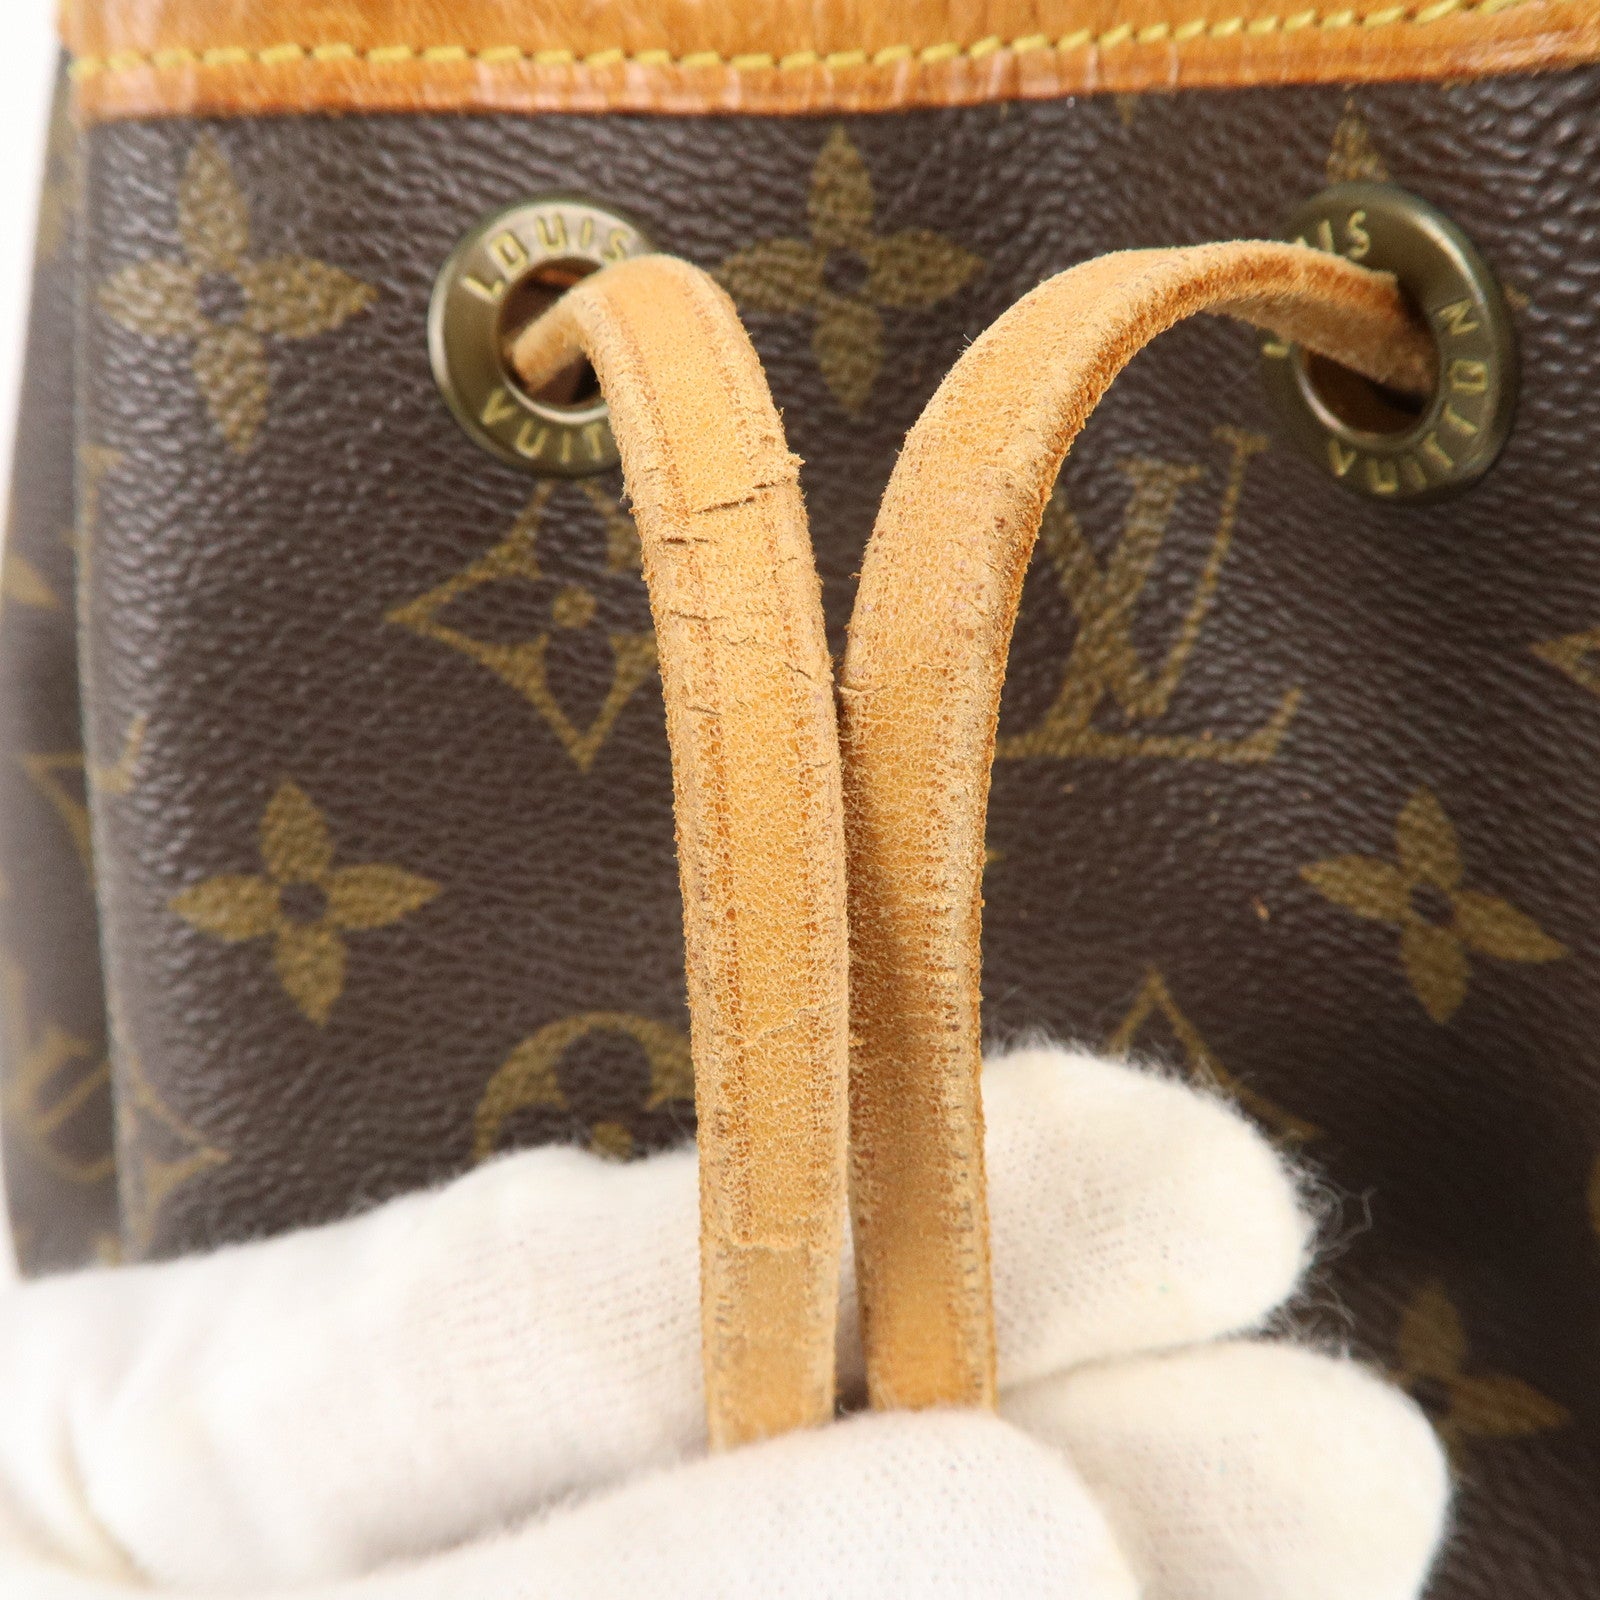 Petit - Shoulder - Monogram - ep_vintage luxury Store - Louis - Brown -  Vuitton - Bag - M42226 – dct - Pre-Loved Louis Vuitton Mini Lin Lucille GM  - Noe